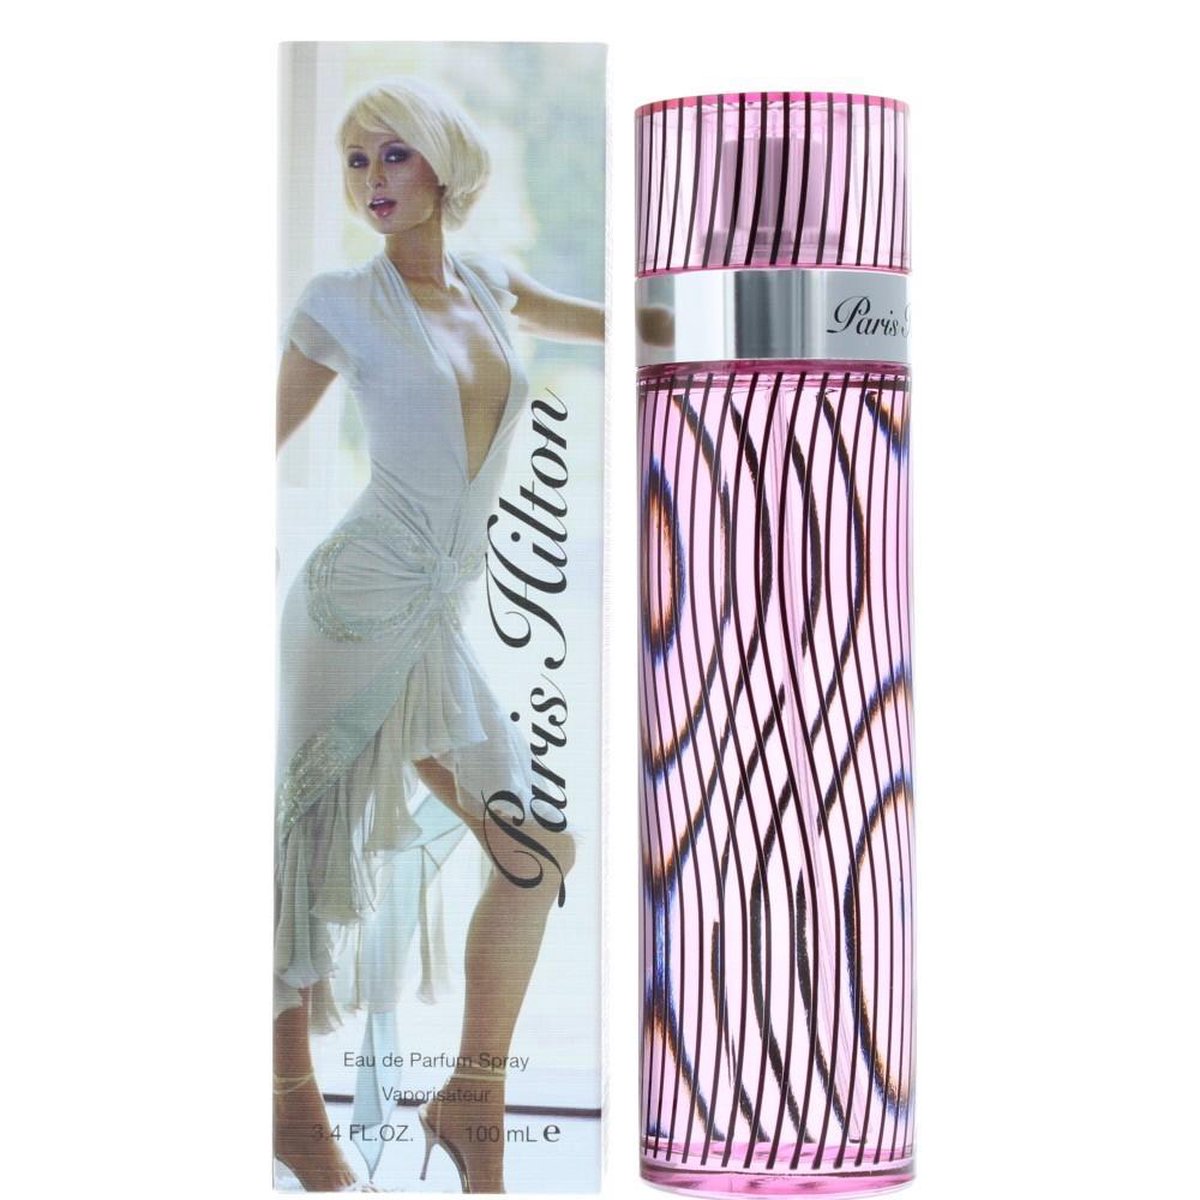 Paris Hilton - 100ml - Eau de parfum